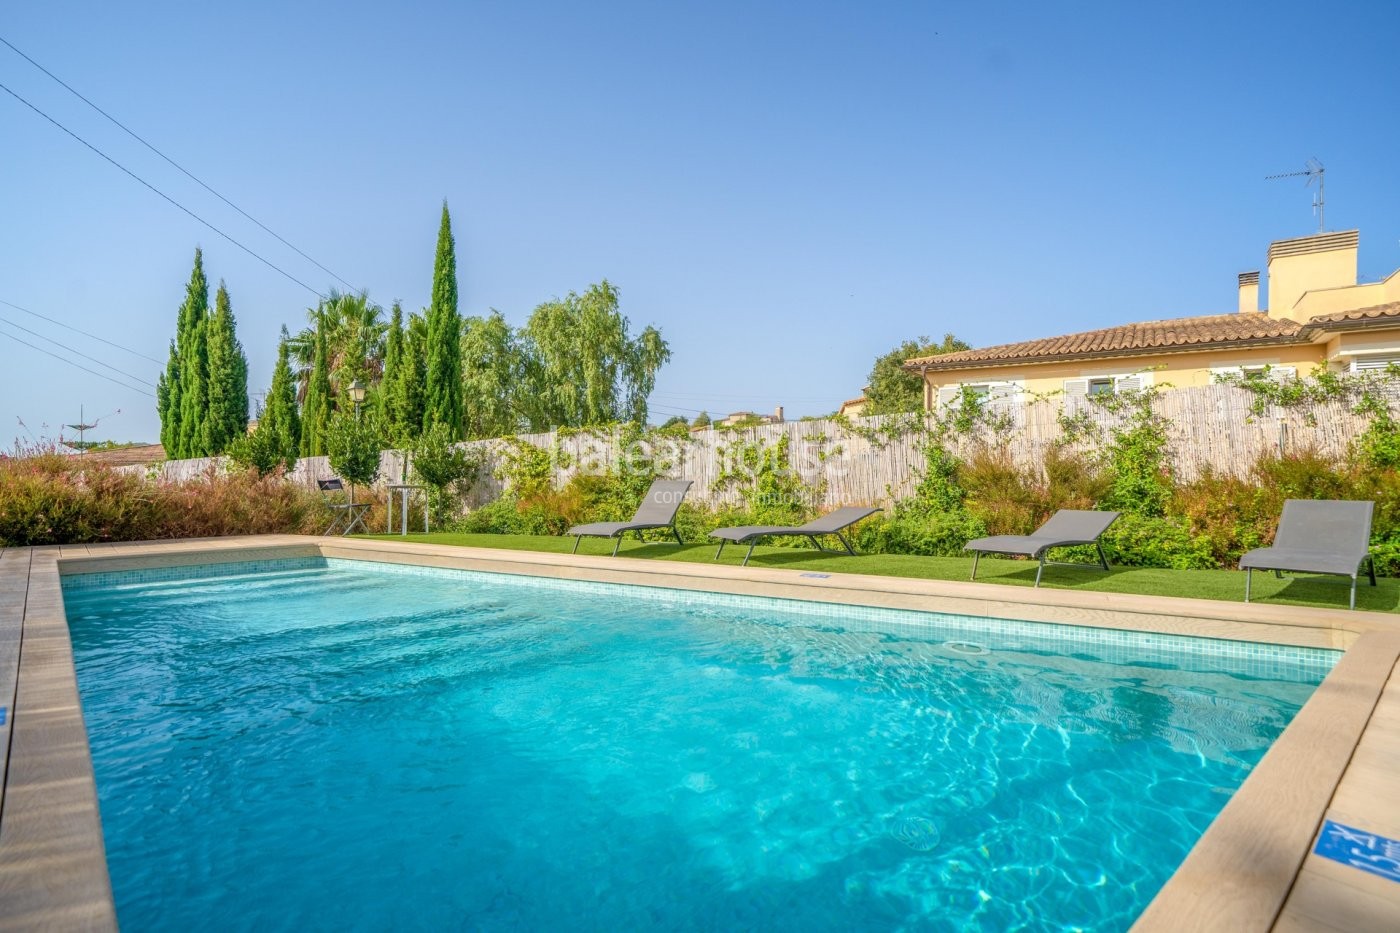 Luminoso chalet con piscina y jardín en la privilegiada zona suroeste de Mallorca de Calviá.